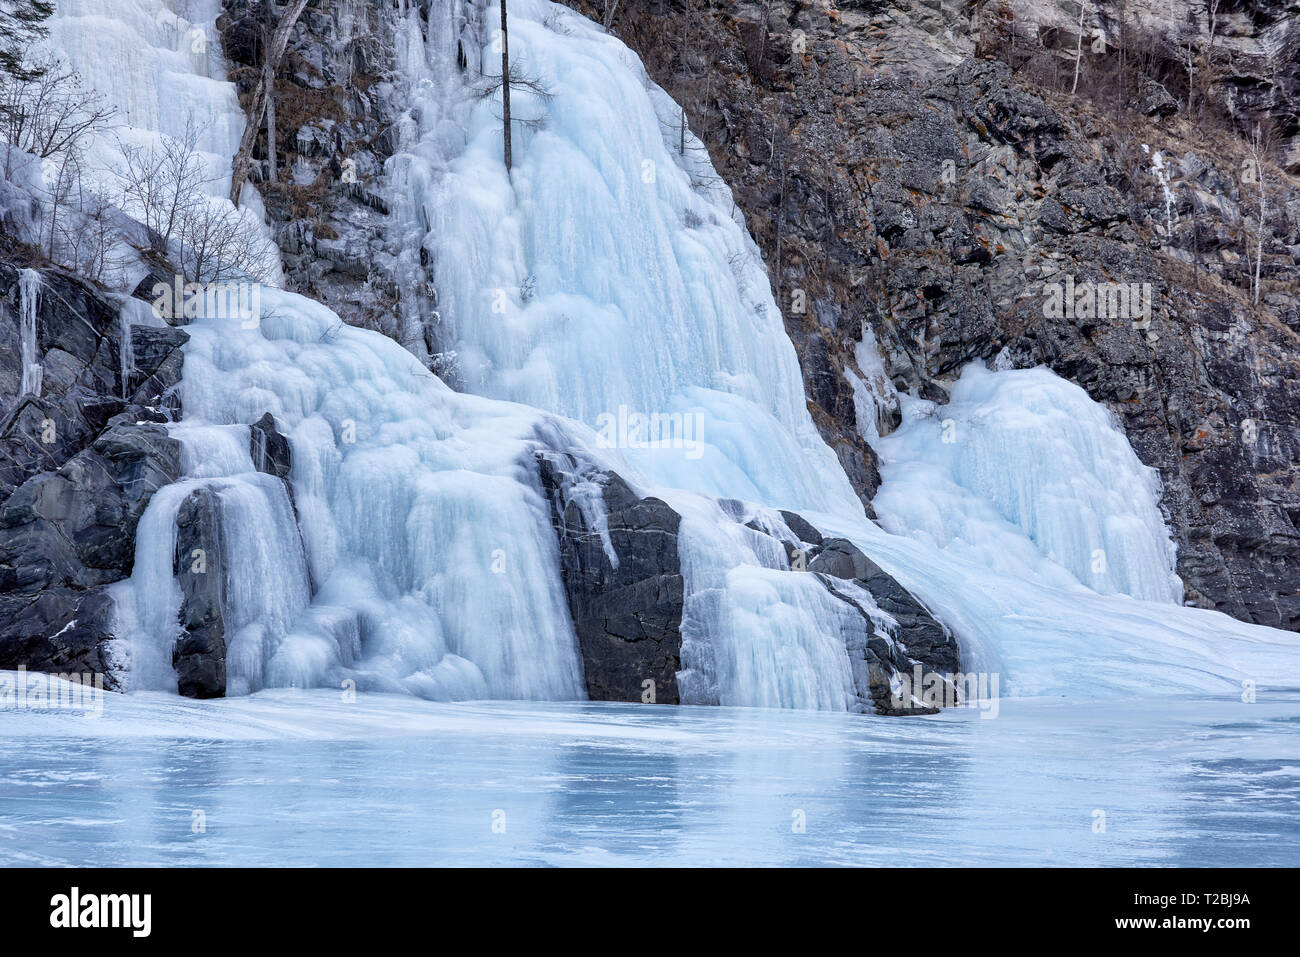 Fairy su cascate di ghiaccio è risultato di congelamento della caduta di piccoli flussi negativi a temperature ambiente. La formazione delle bizzarre forme di congelati acqua a molla Foto Stock